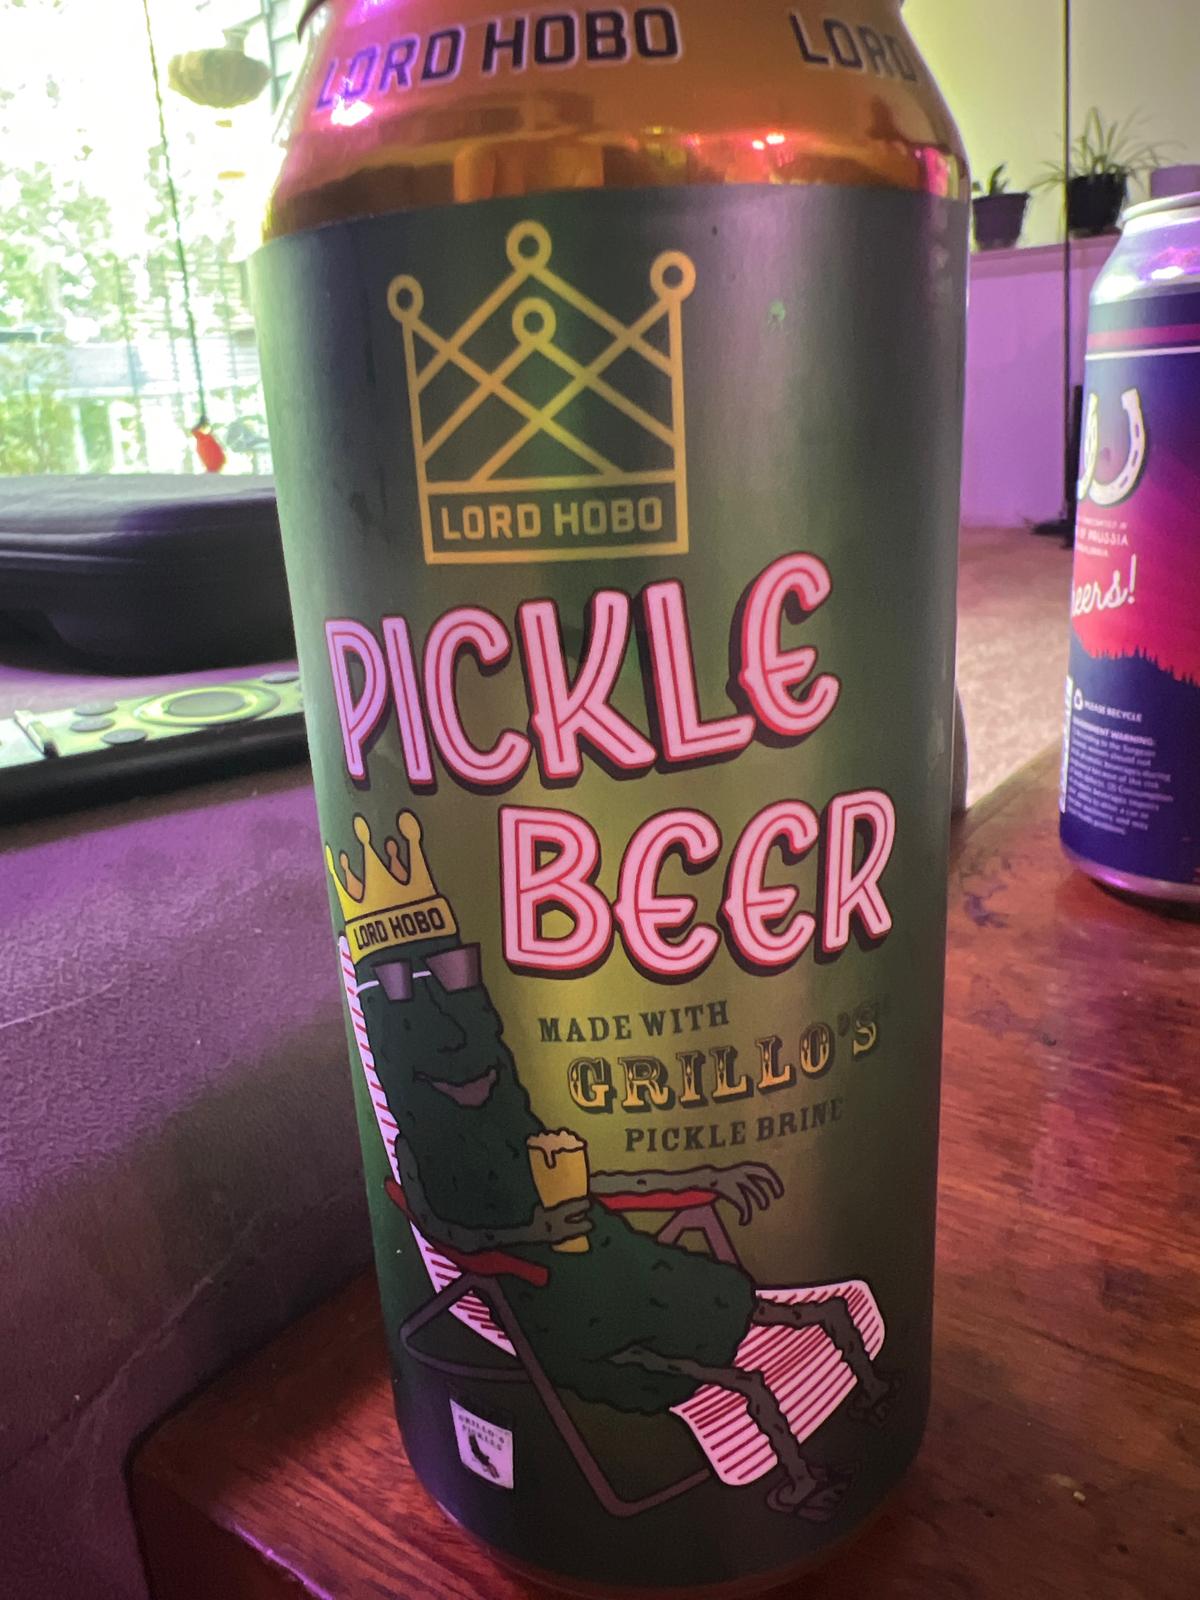 Pickle Beer